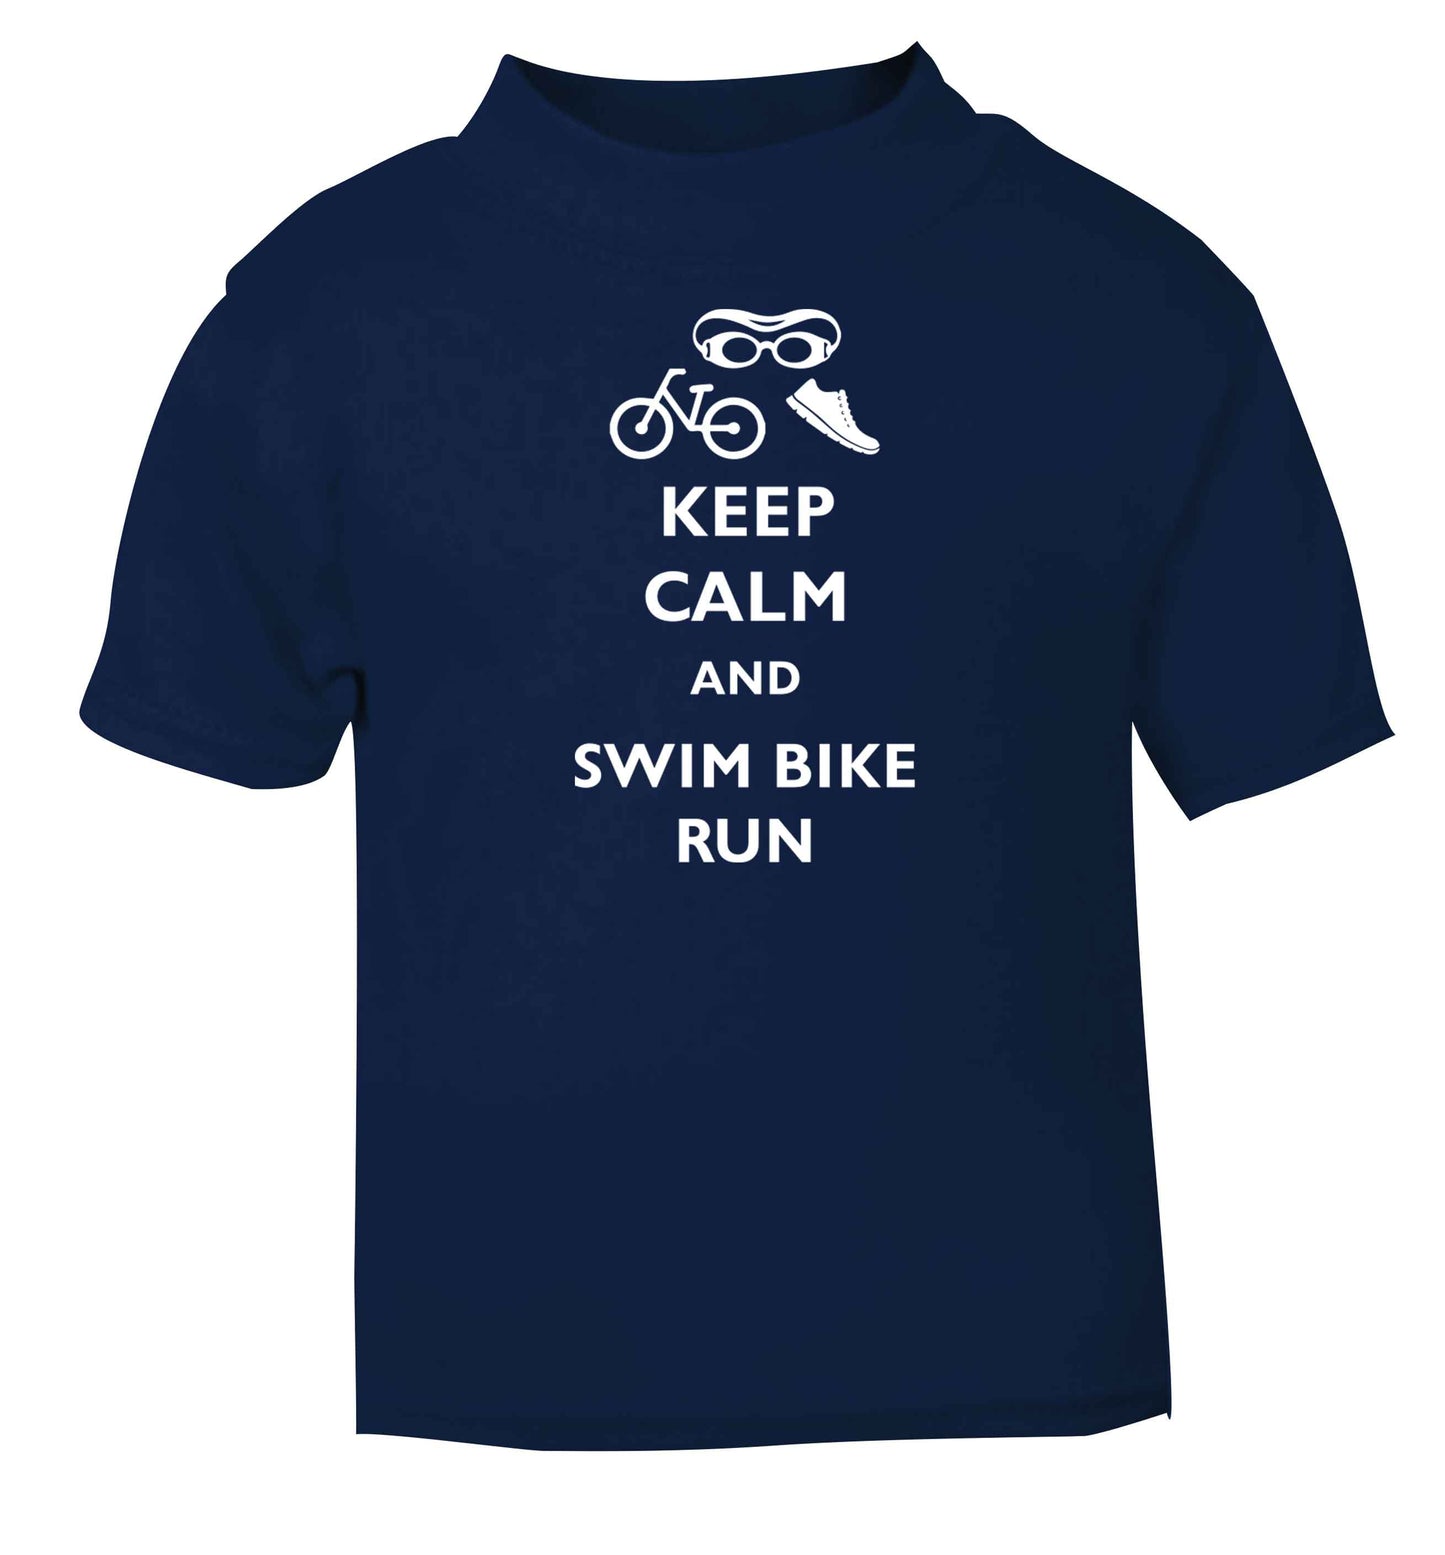 Keep calm and swim bike run navy baby toddler Tshirt 2 Years